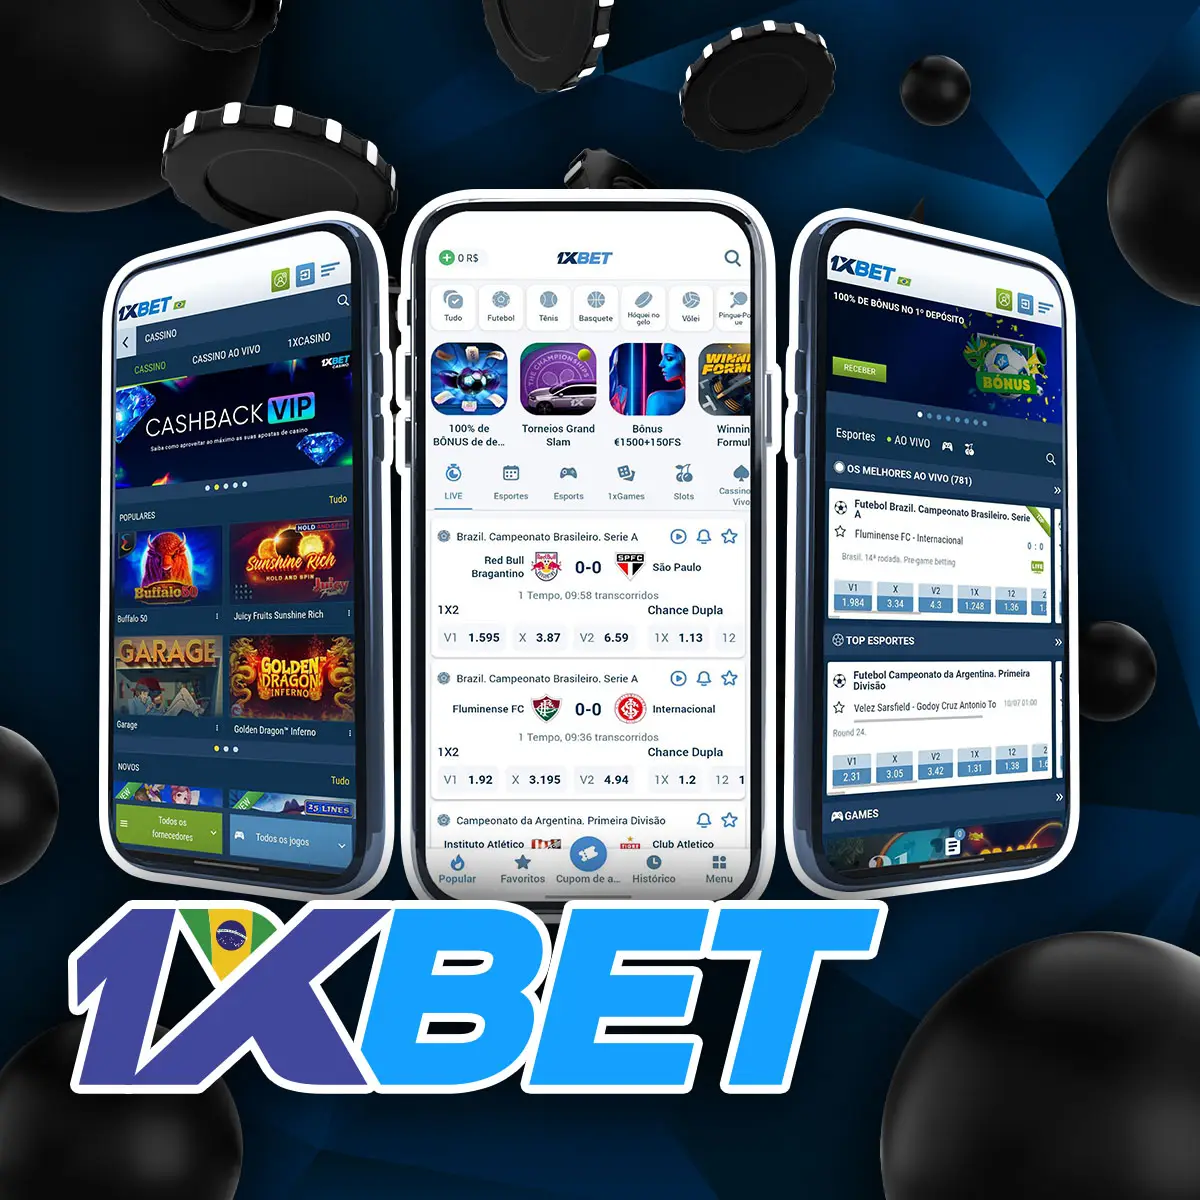 1xbet Melhor aplicativo móvel para apostas on-line no Brasil